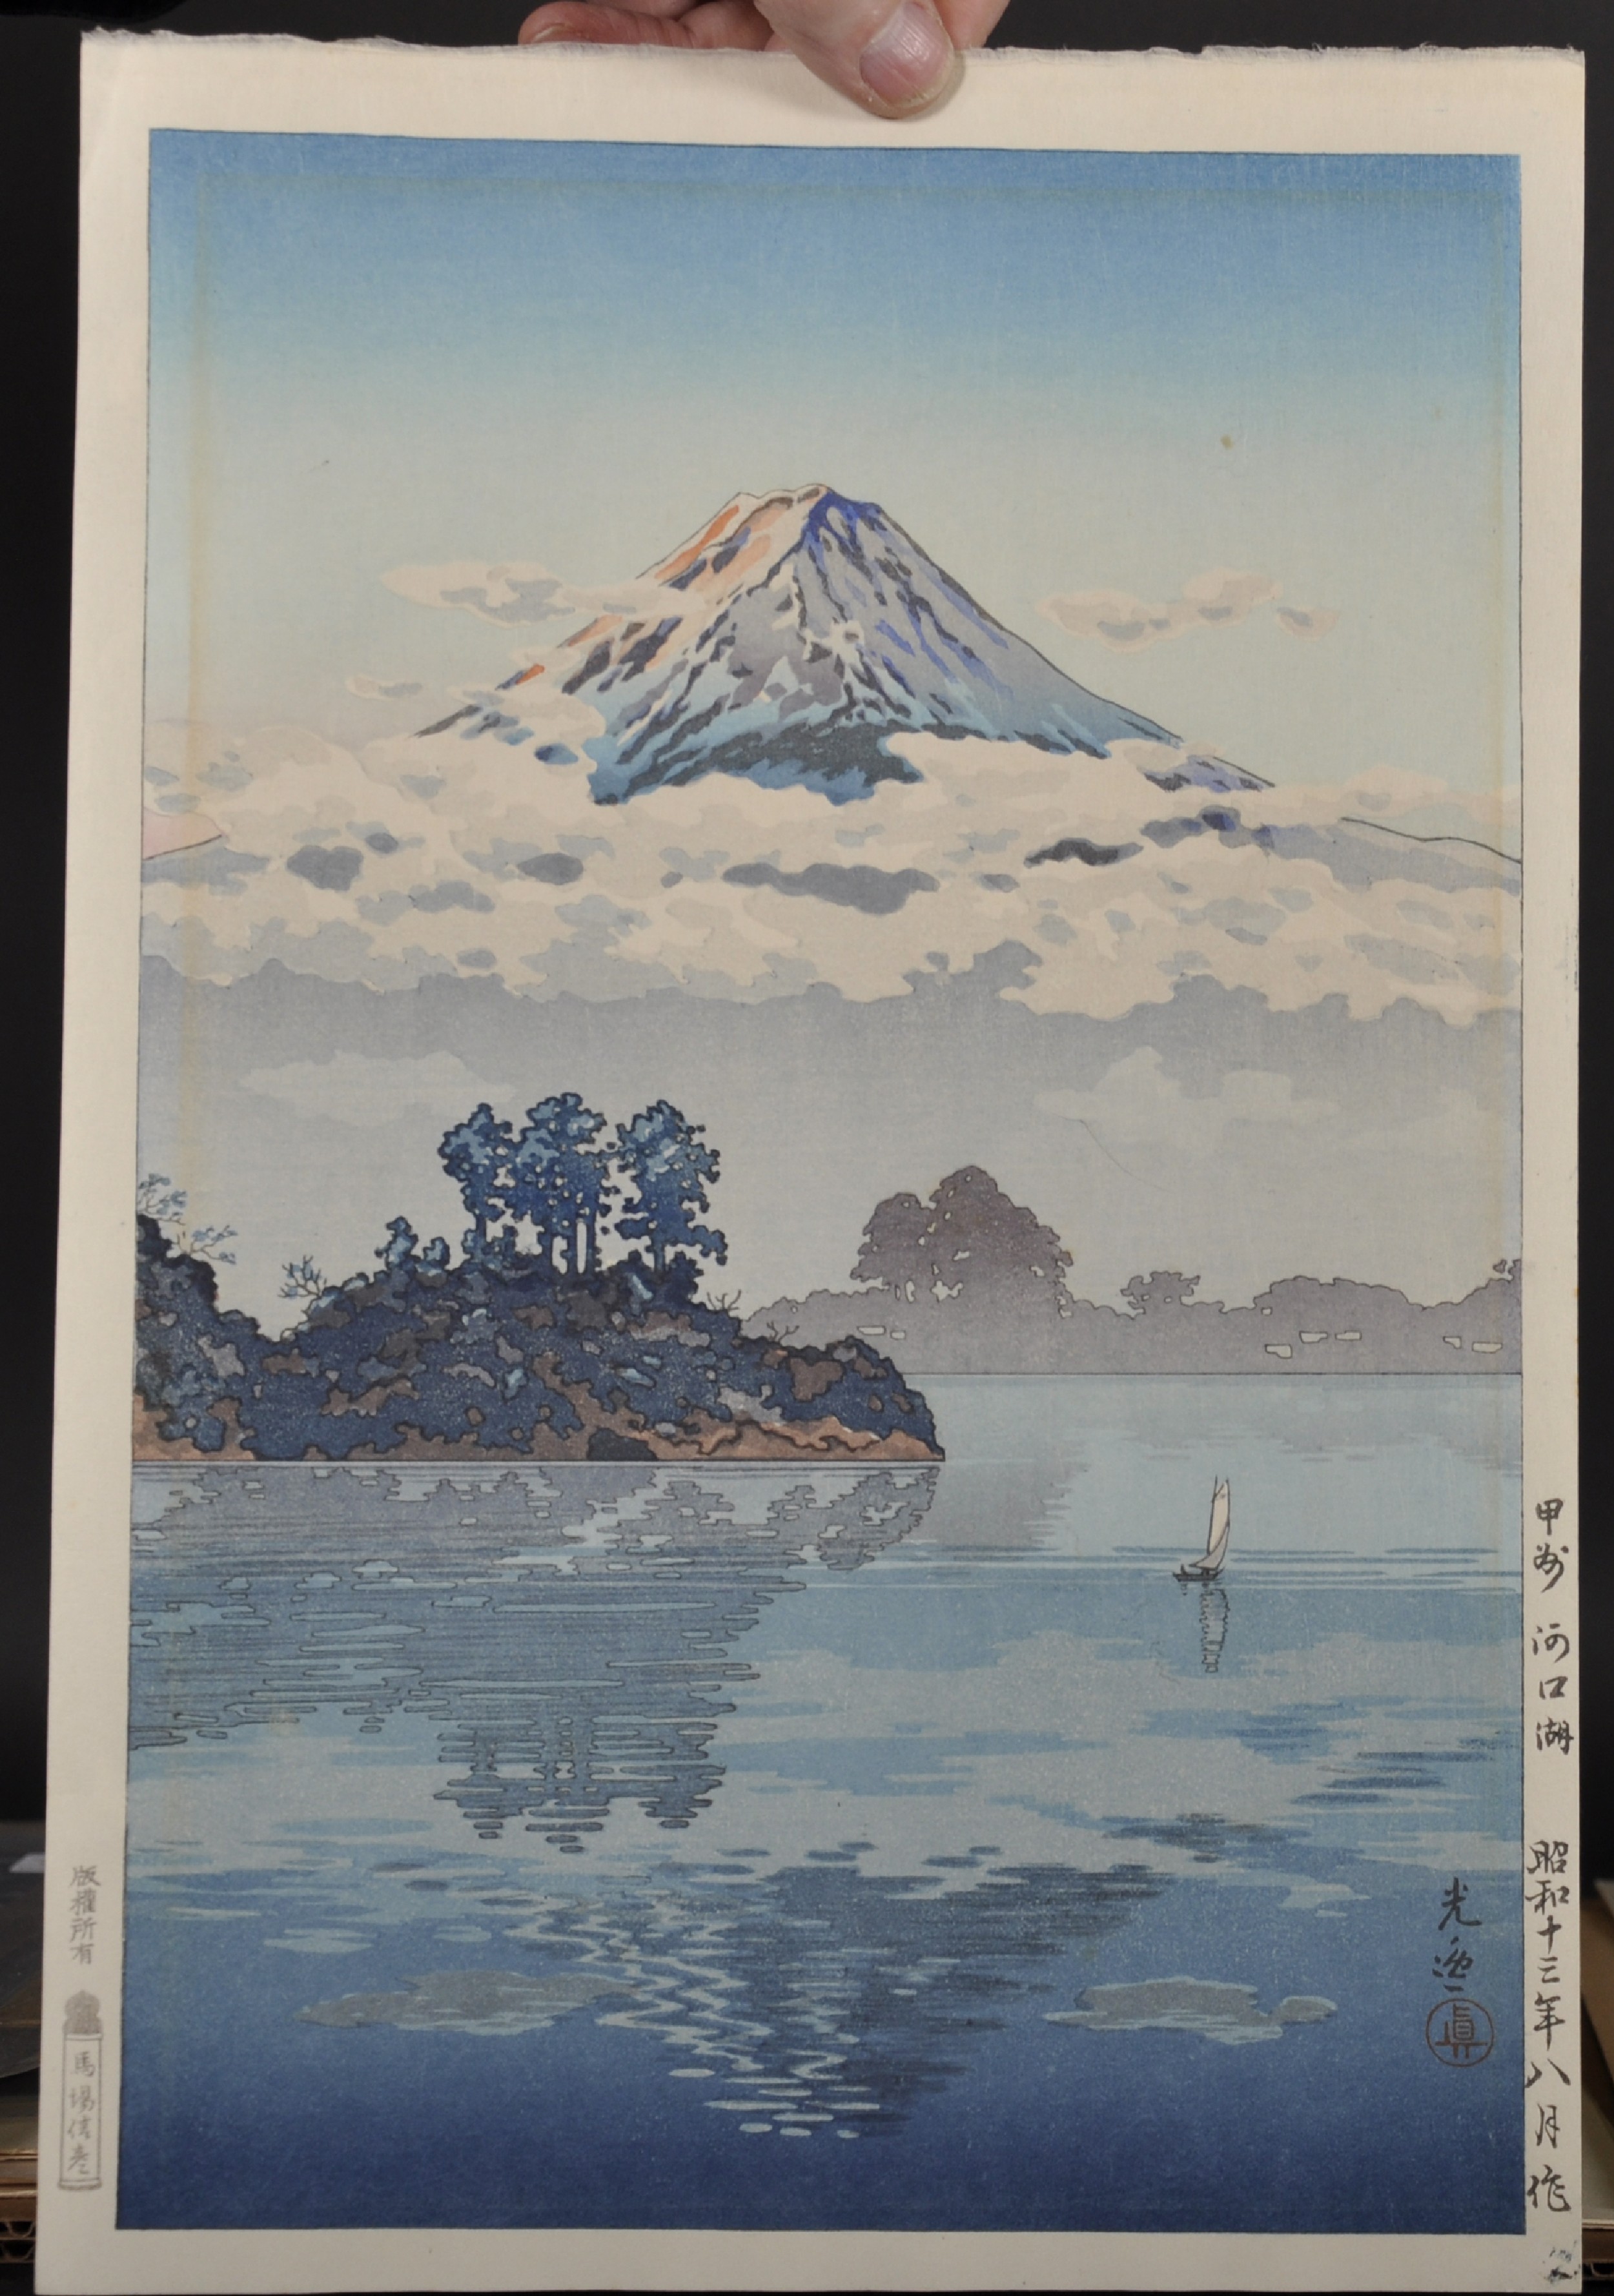 Tsuchiya Koitsu (1870-1949) Japanese. "Lake Kawaguchi", at the base of Mount Fuji, Woodcut, - Image 2 of 4